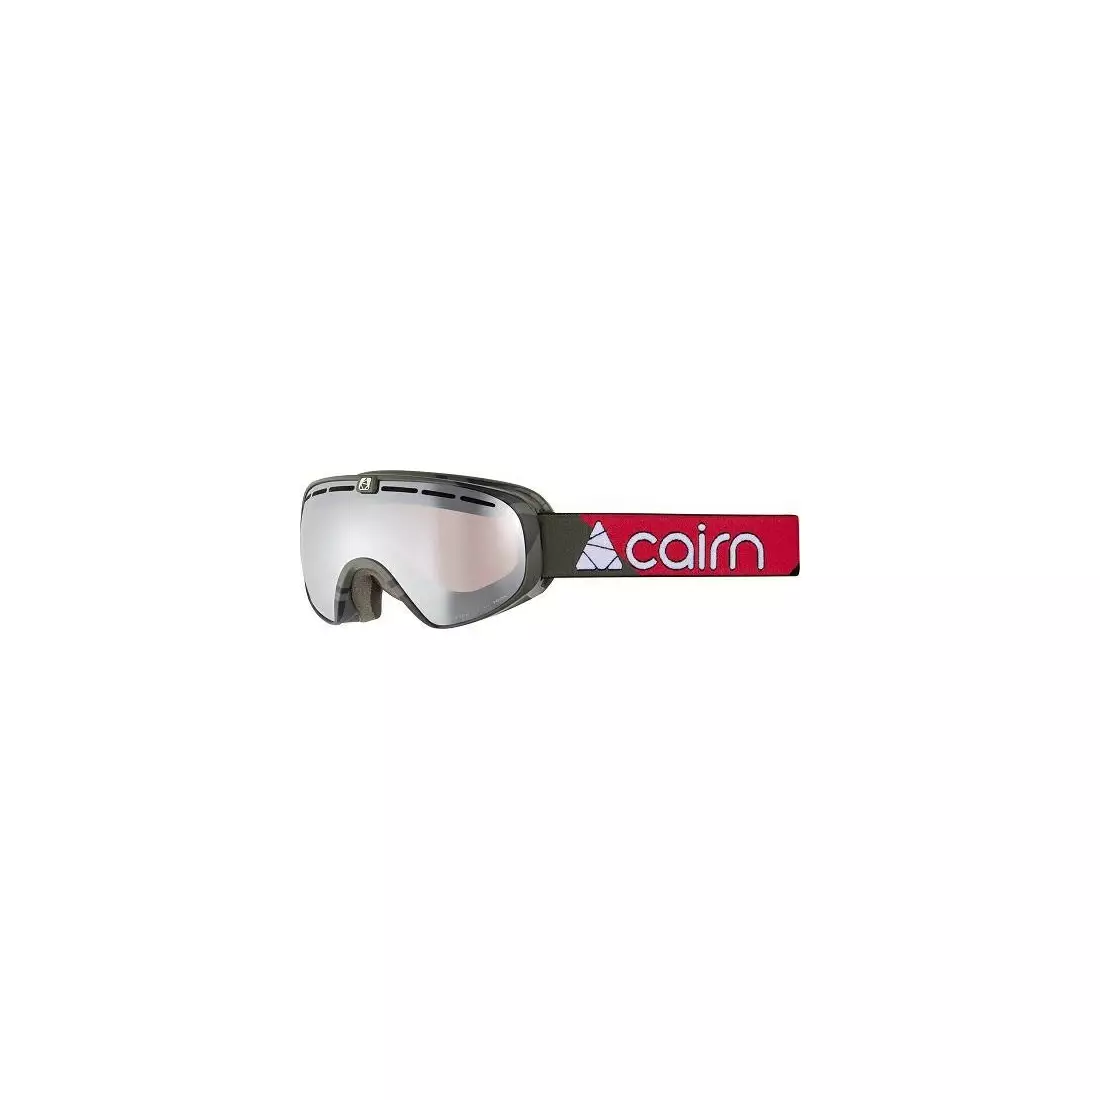 CAIRN Ski-/Snowboardbrille SPOT OTG SPX3000 Black Red Racing